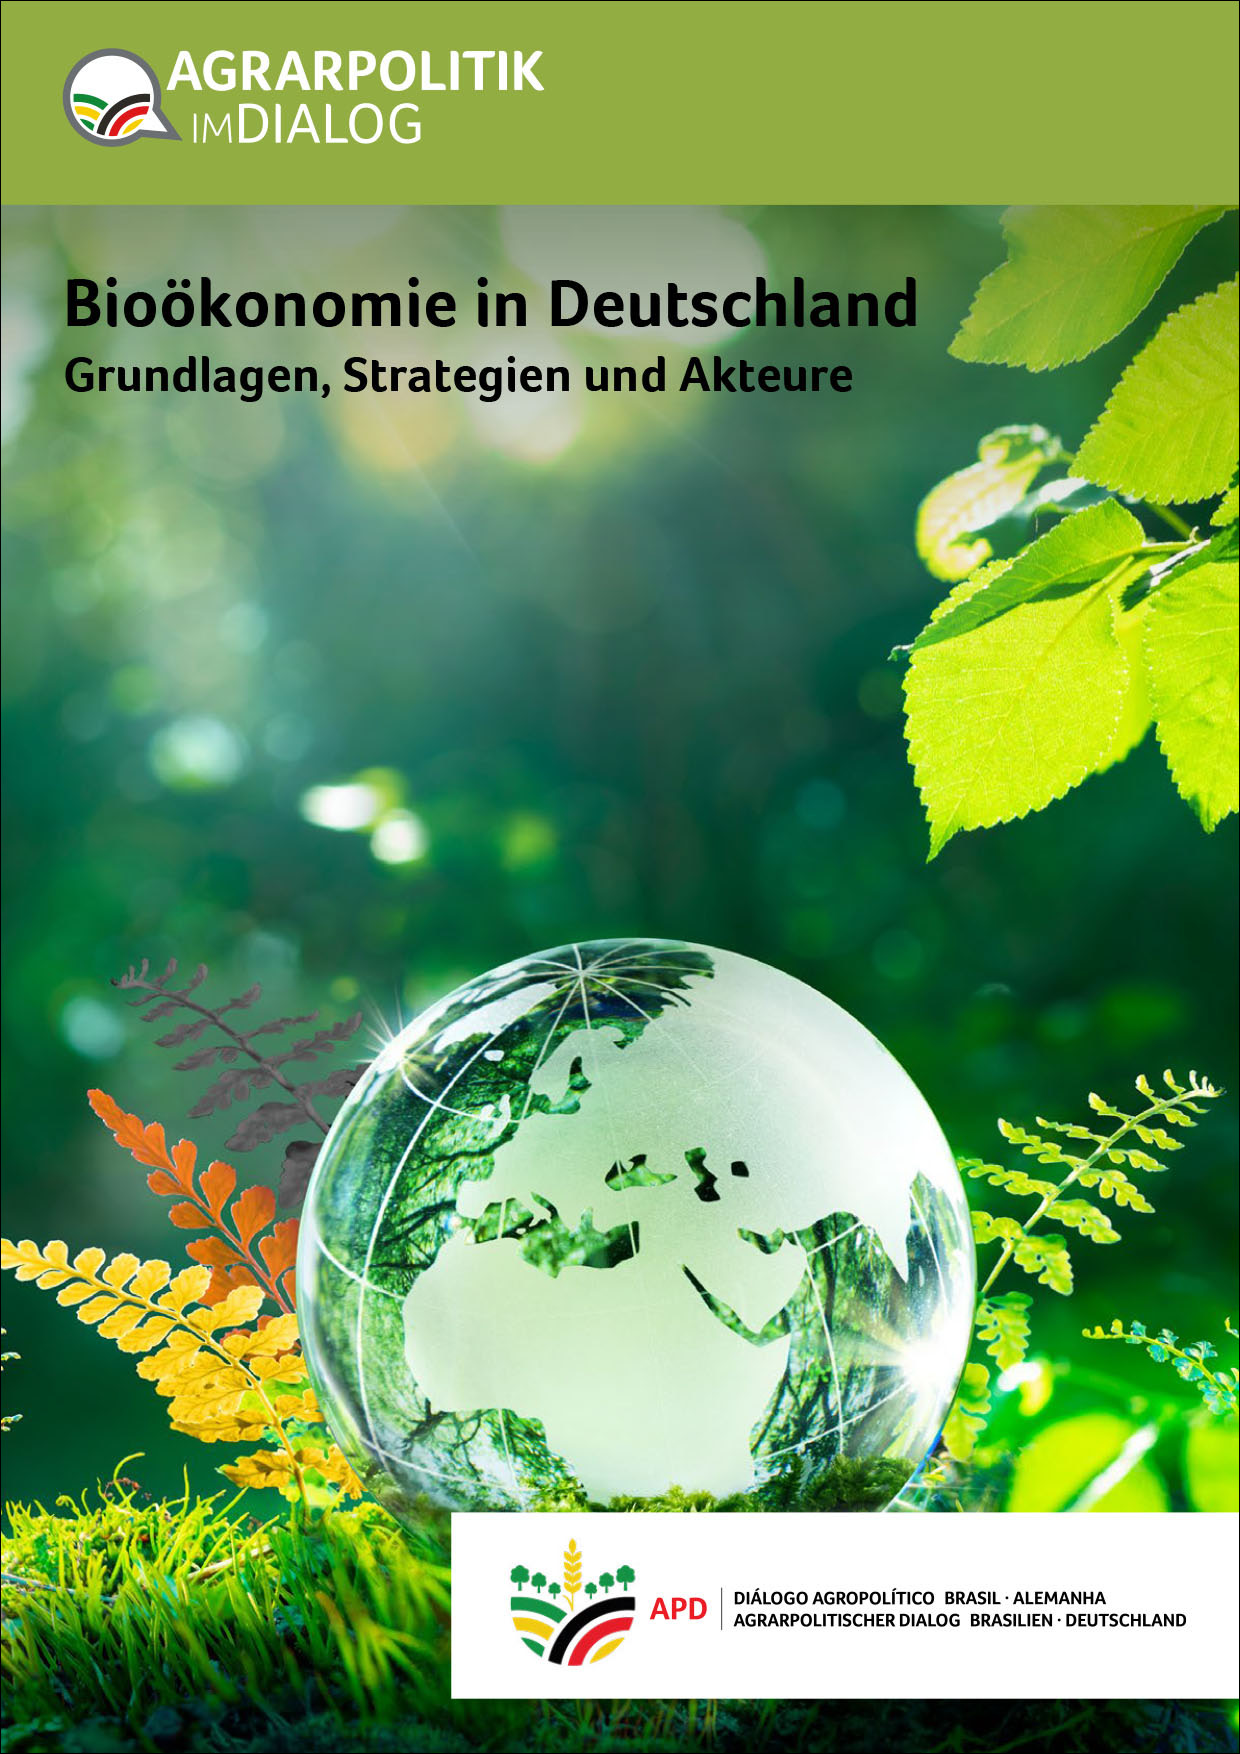 Bioeconomia_na_Alemanha_DE